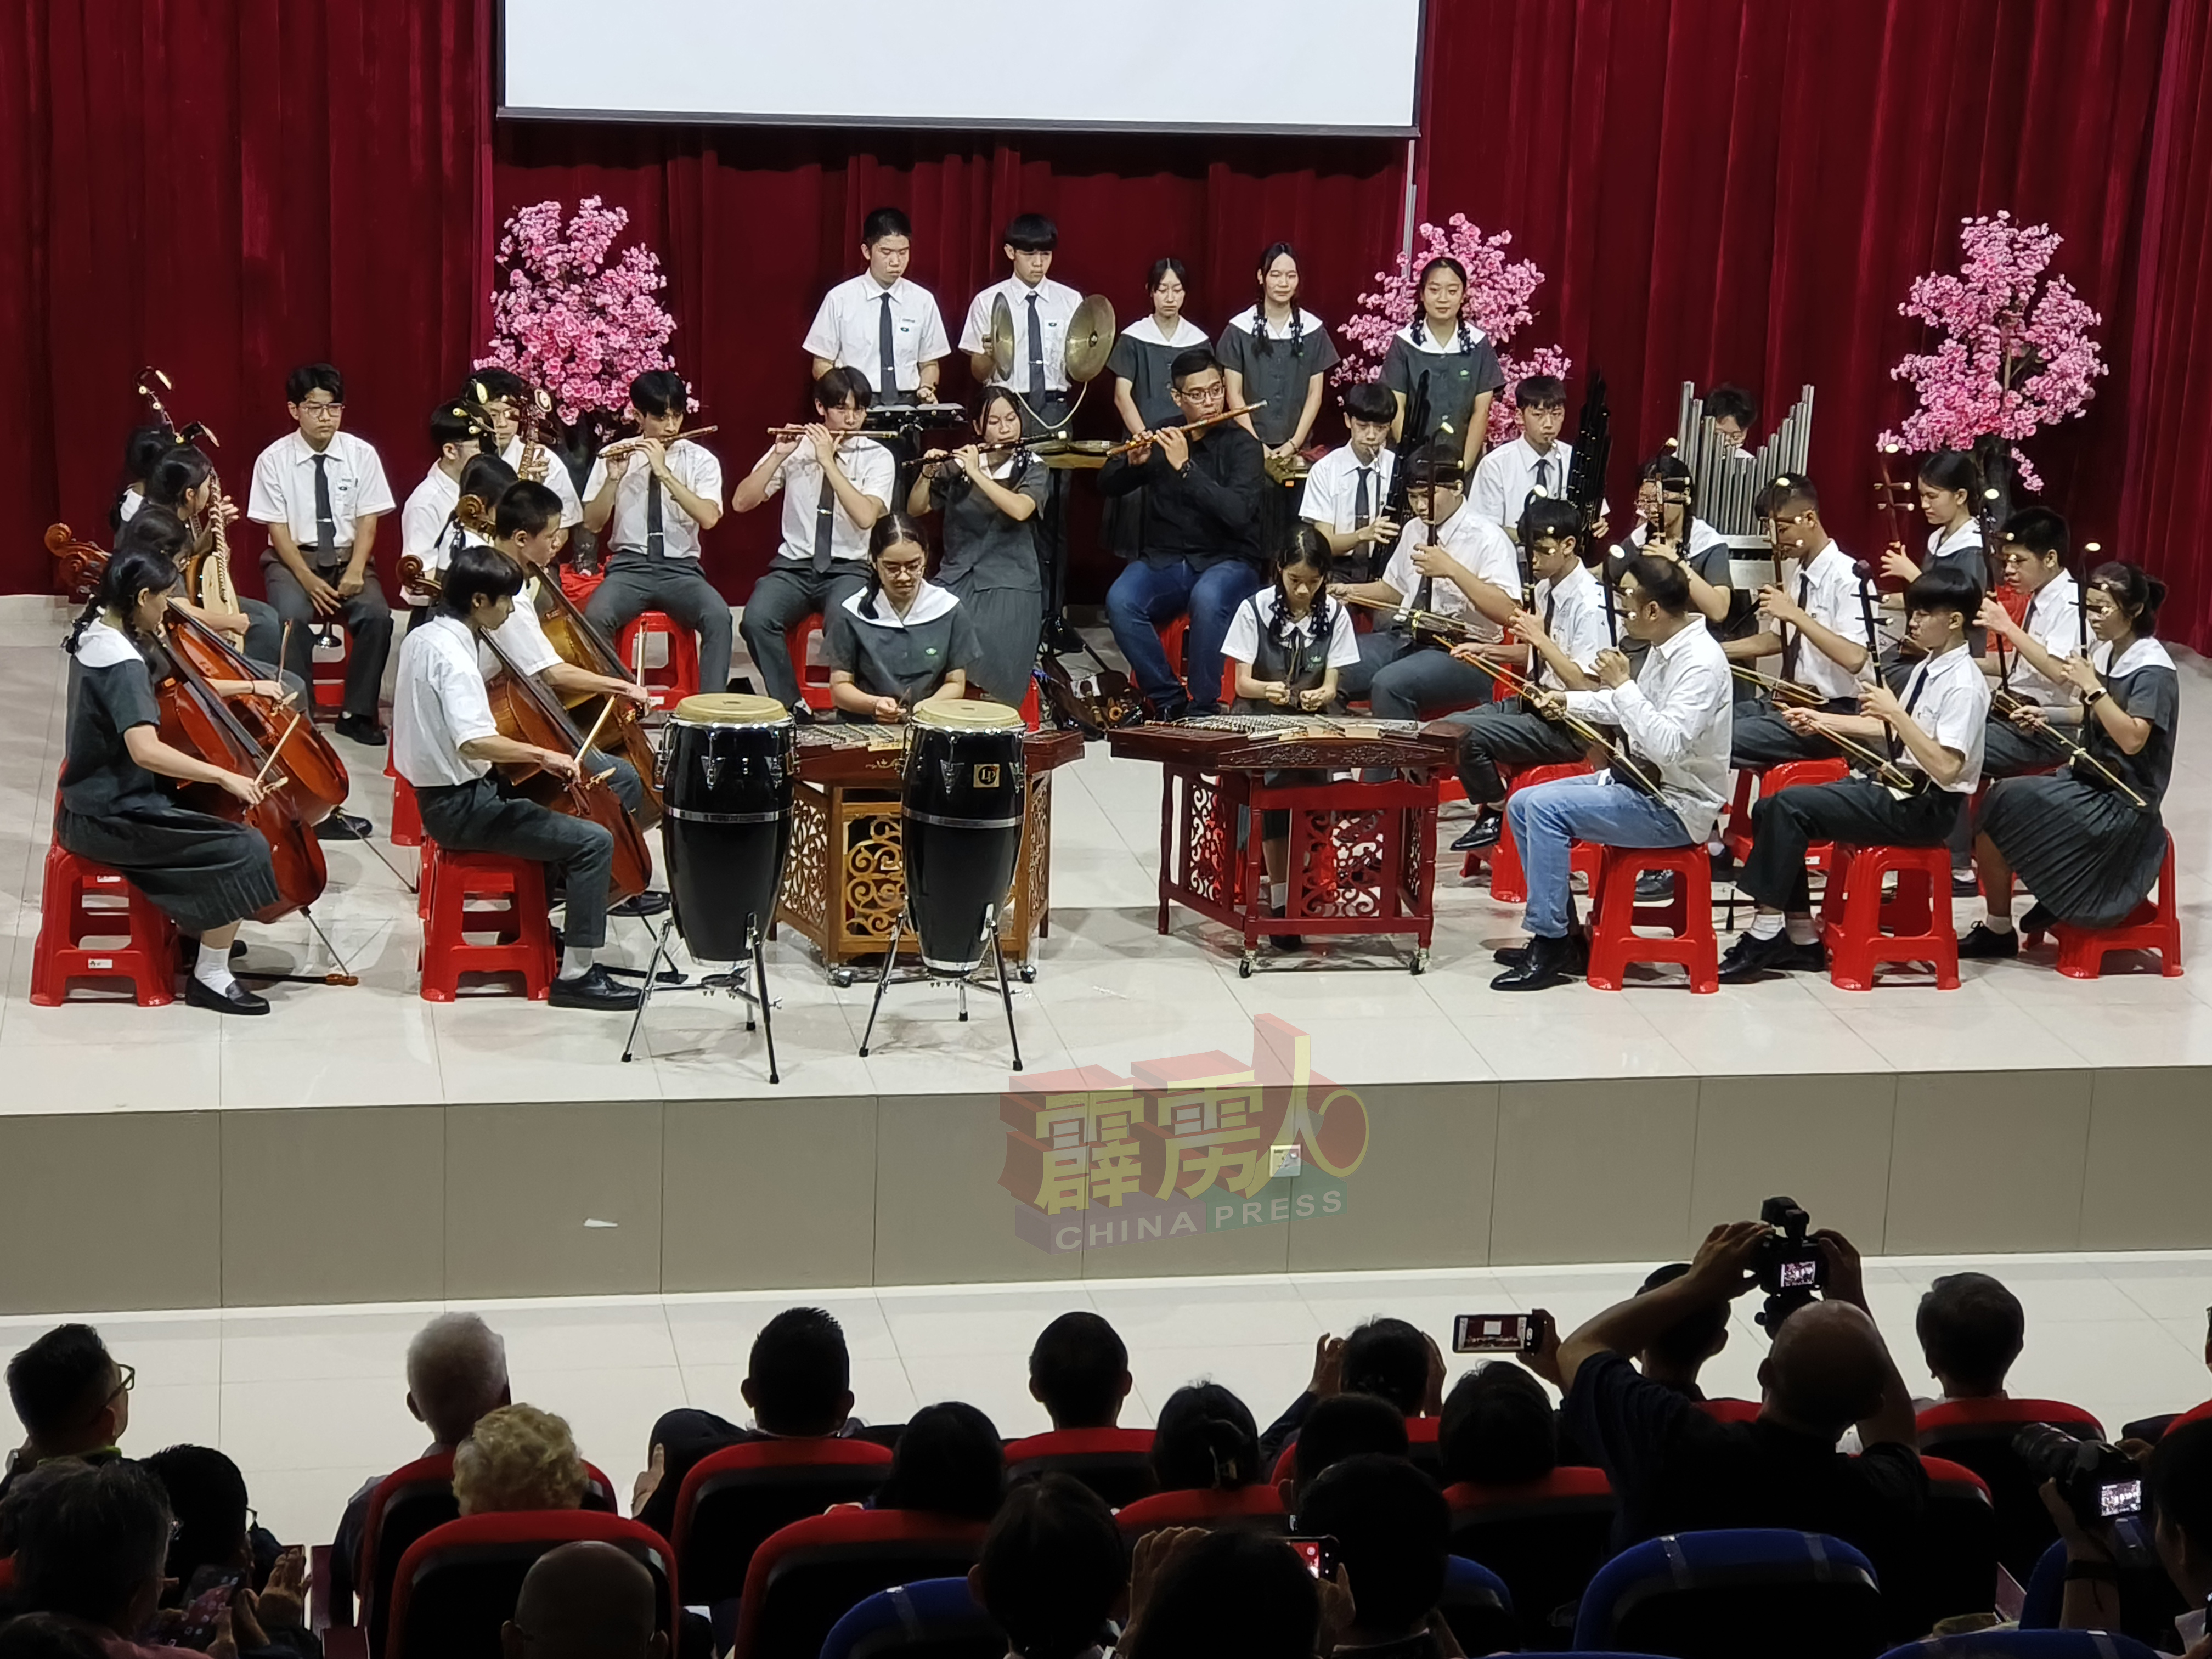 慈中的国乐表演，演奏了“望春风”、“桃花过渡”、“草螟弄鸡公”及“Rasa Sayang”。